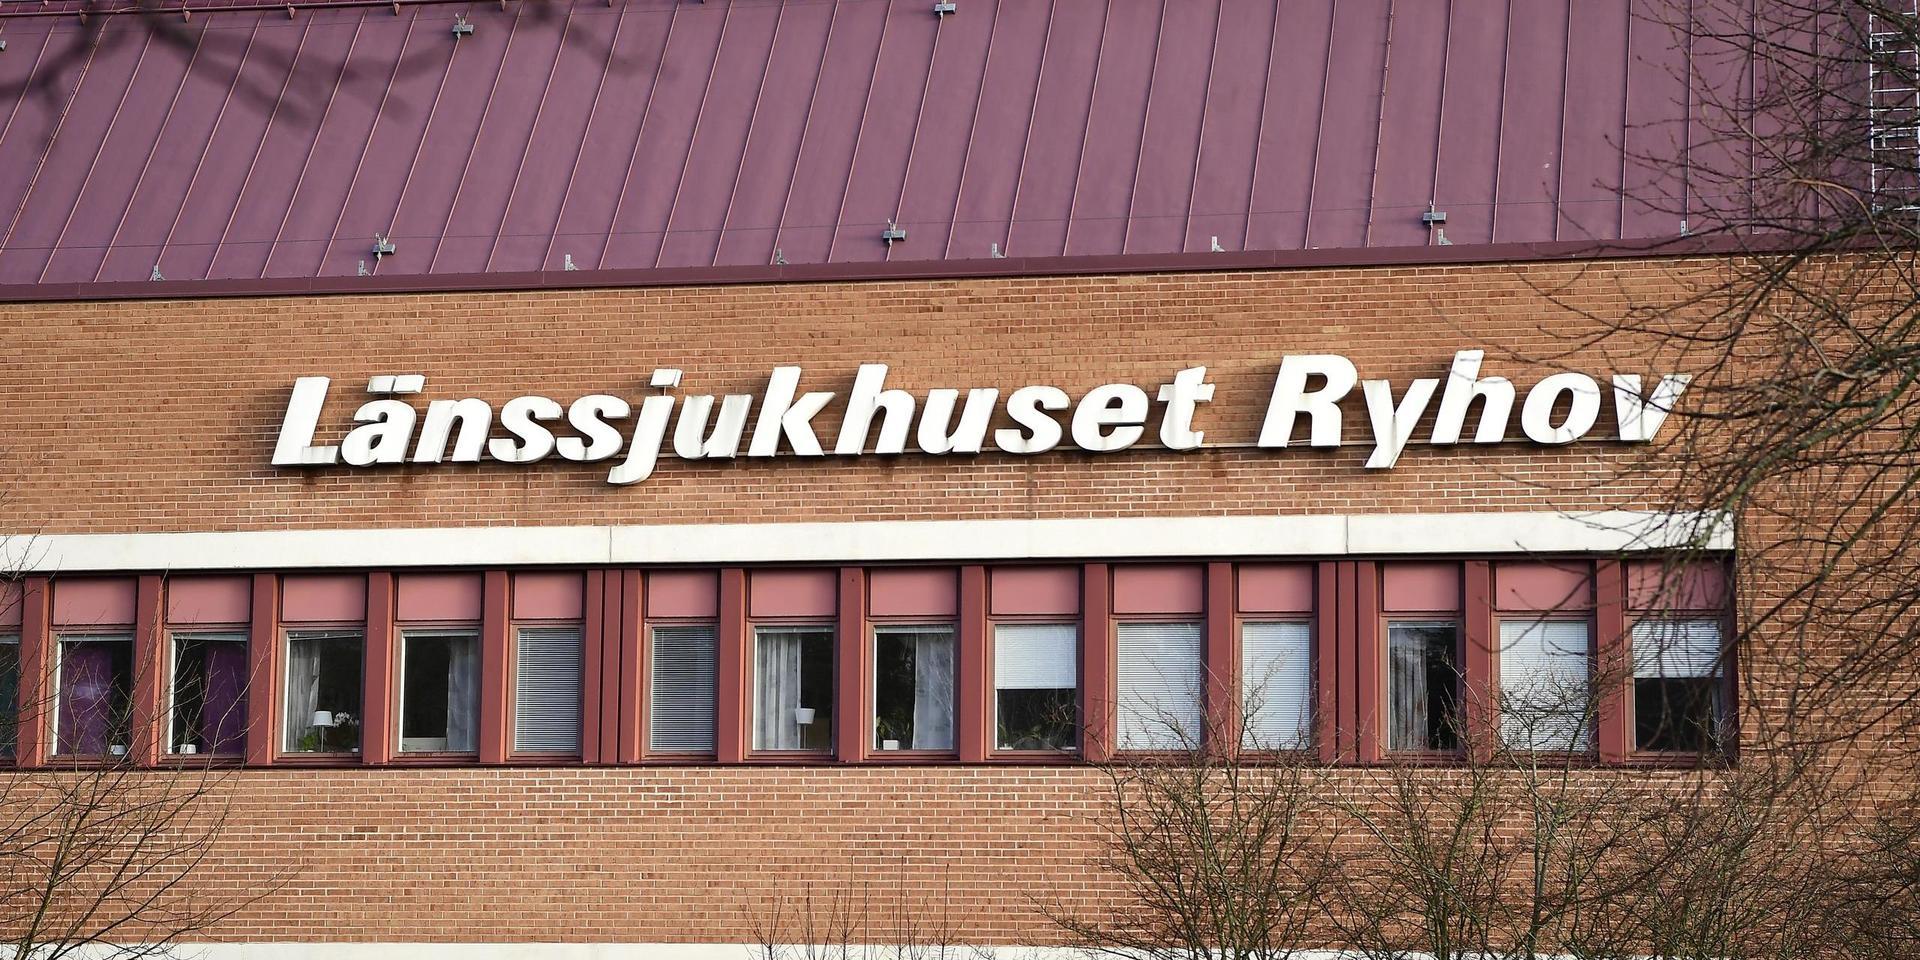 En ortopedisk vårdenhet på länssjukhuset Ryhov i Jönköping har intagningsstopp på grund av spridning av covid-19. Intagningsstoppet infördes i onsdags sedan 14 patienter och lika många ur personalen smittats. 